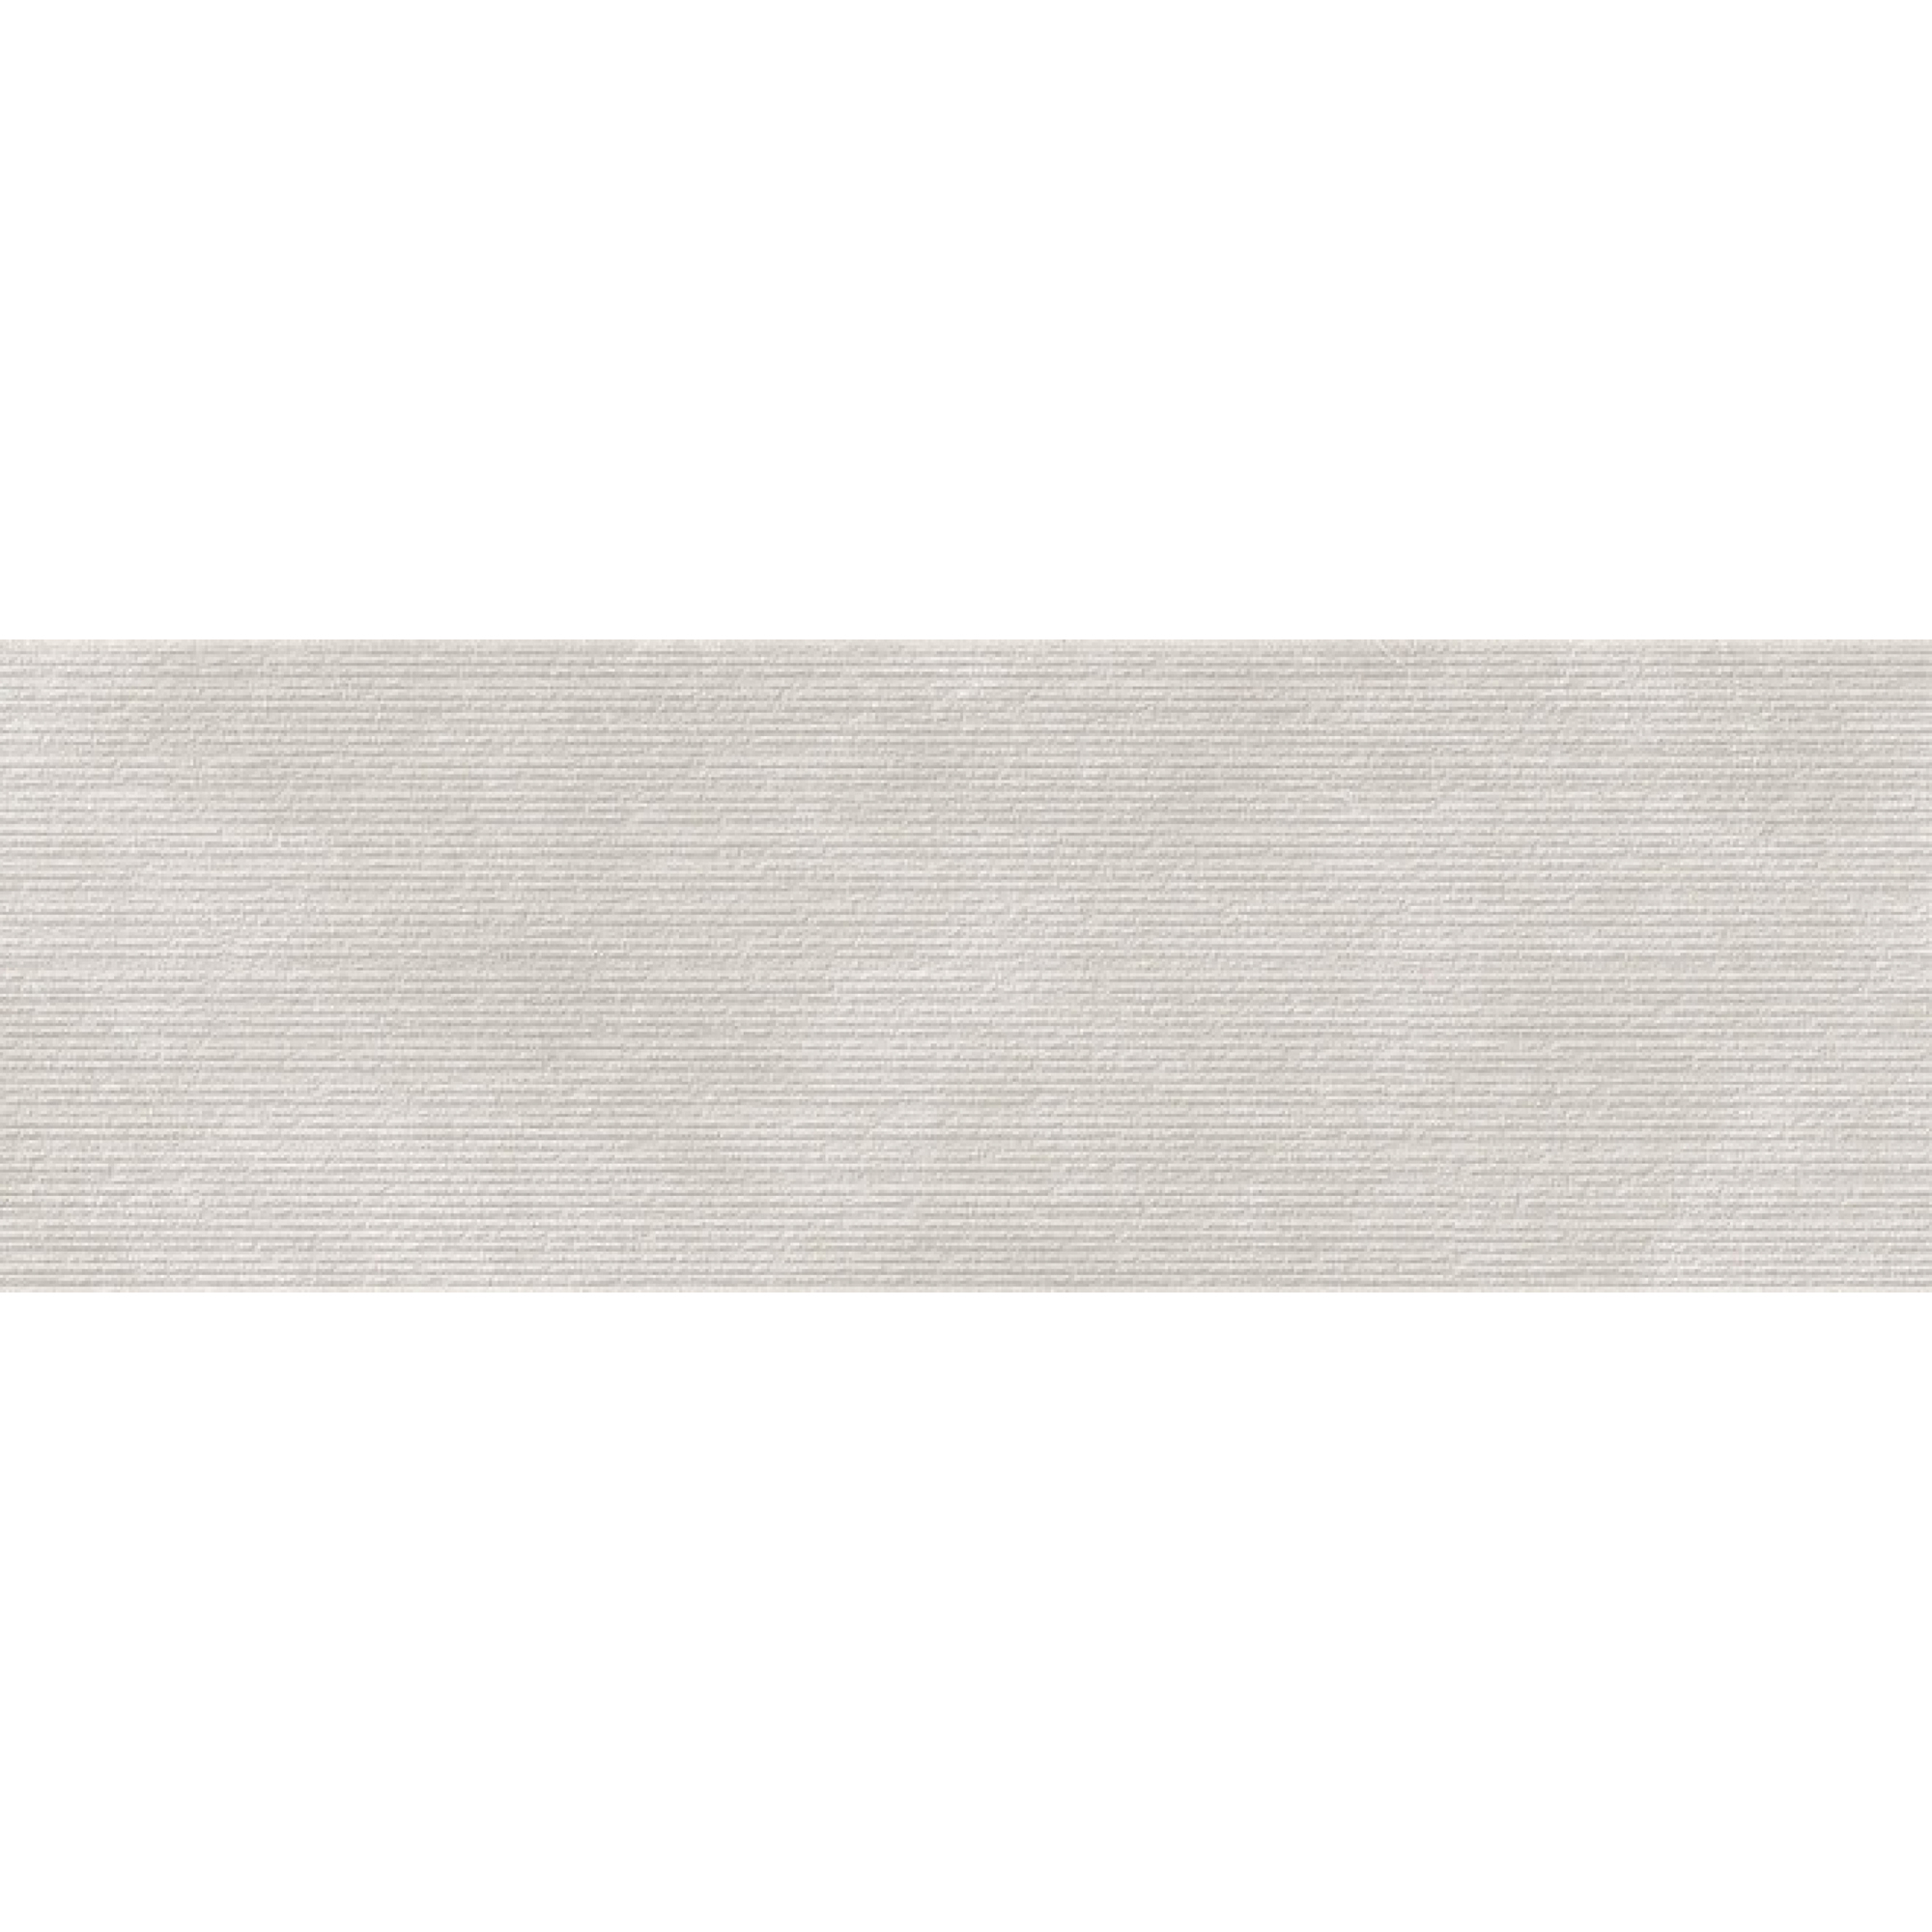 Плитка Kerama Marazzi Эскориал серый структура обрезной 40x120 см 14012R плитка kerama marazzi парнас беж обрезной натуральный 80x160x1 1 см sg570300r